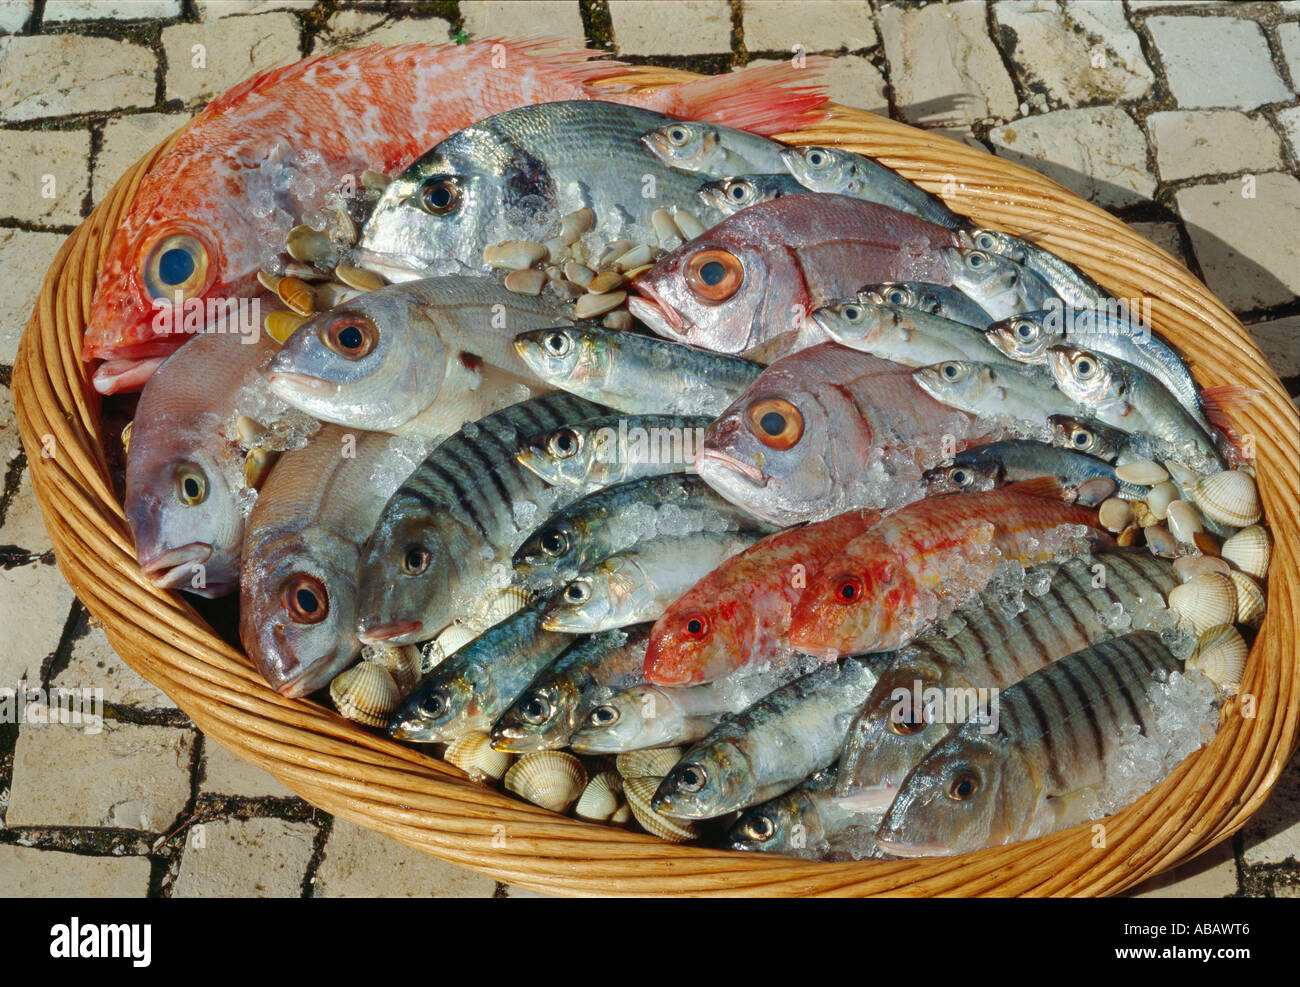 Cesto di pesce immagini e fotografie stock ad alta risoluzione - Alamy